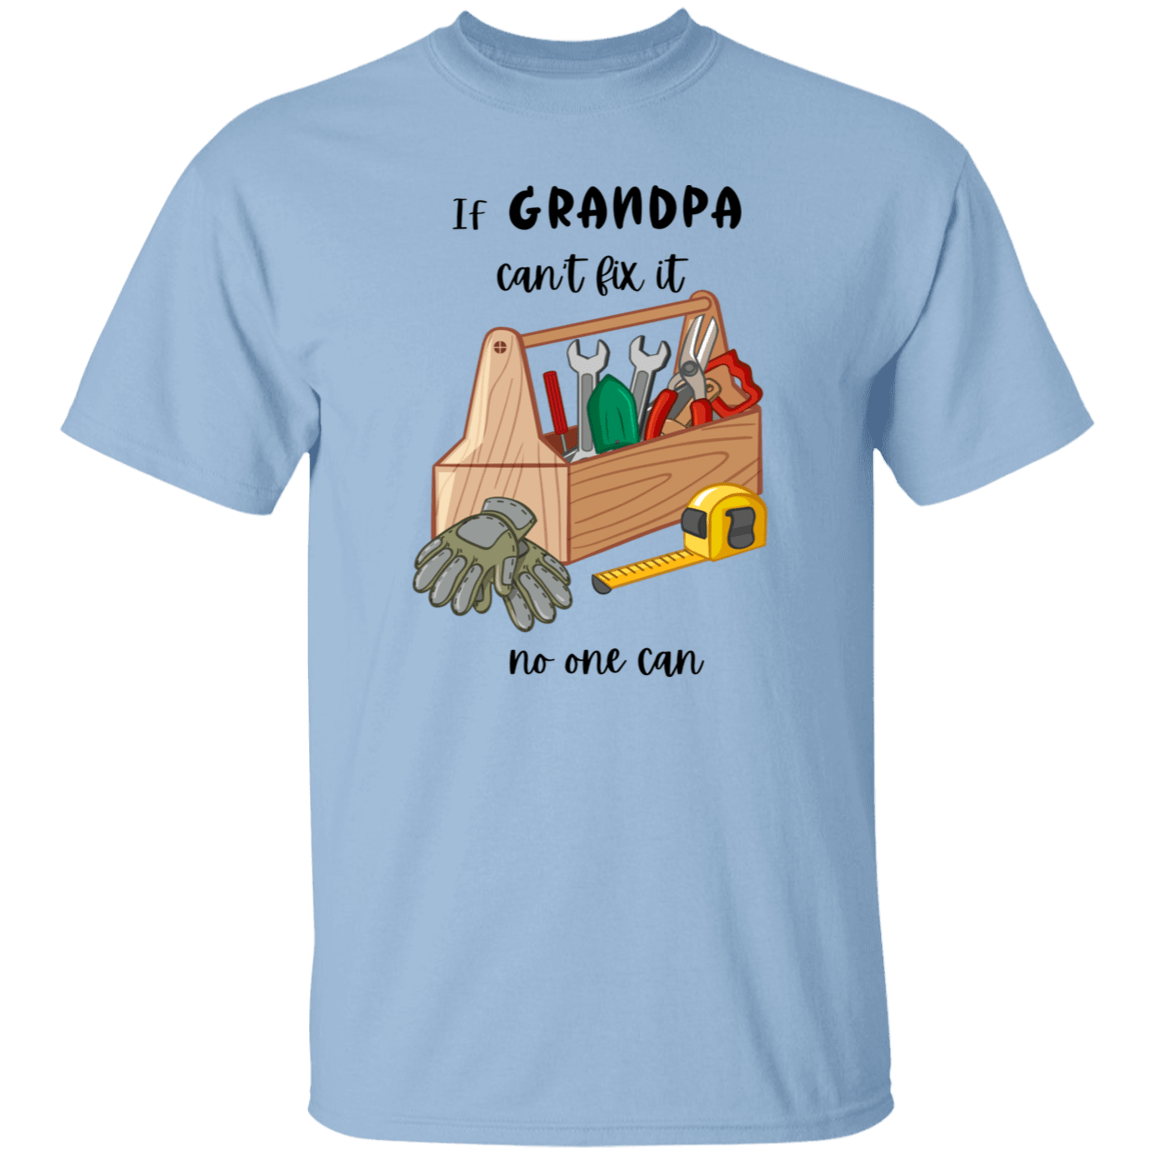 If Grandpa can't fix it...T-Shirt